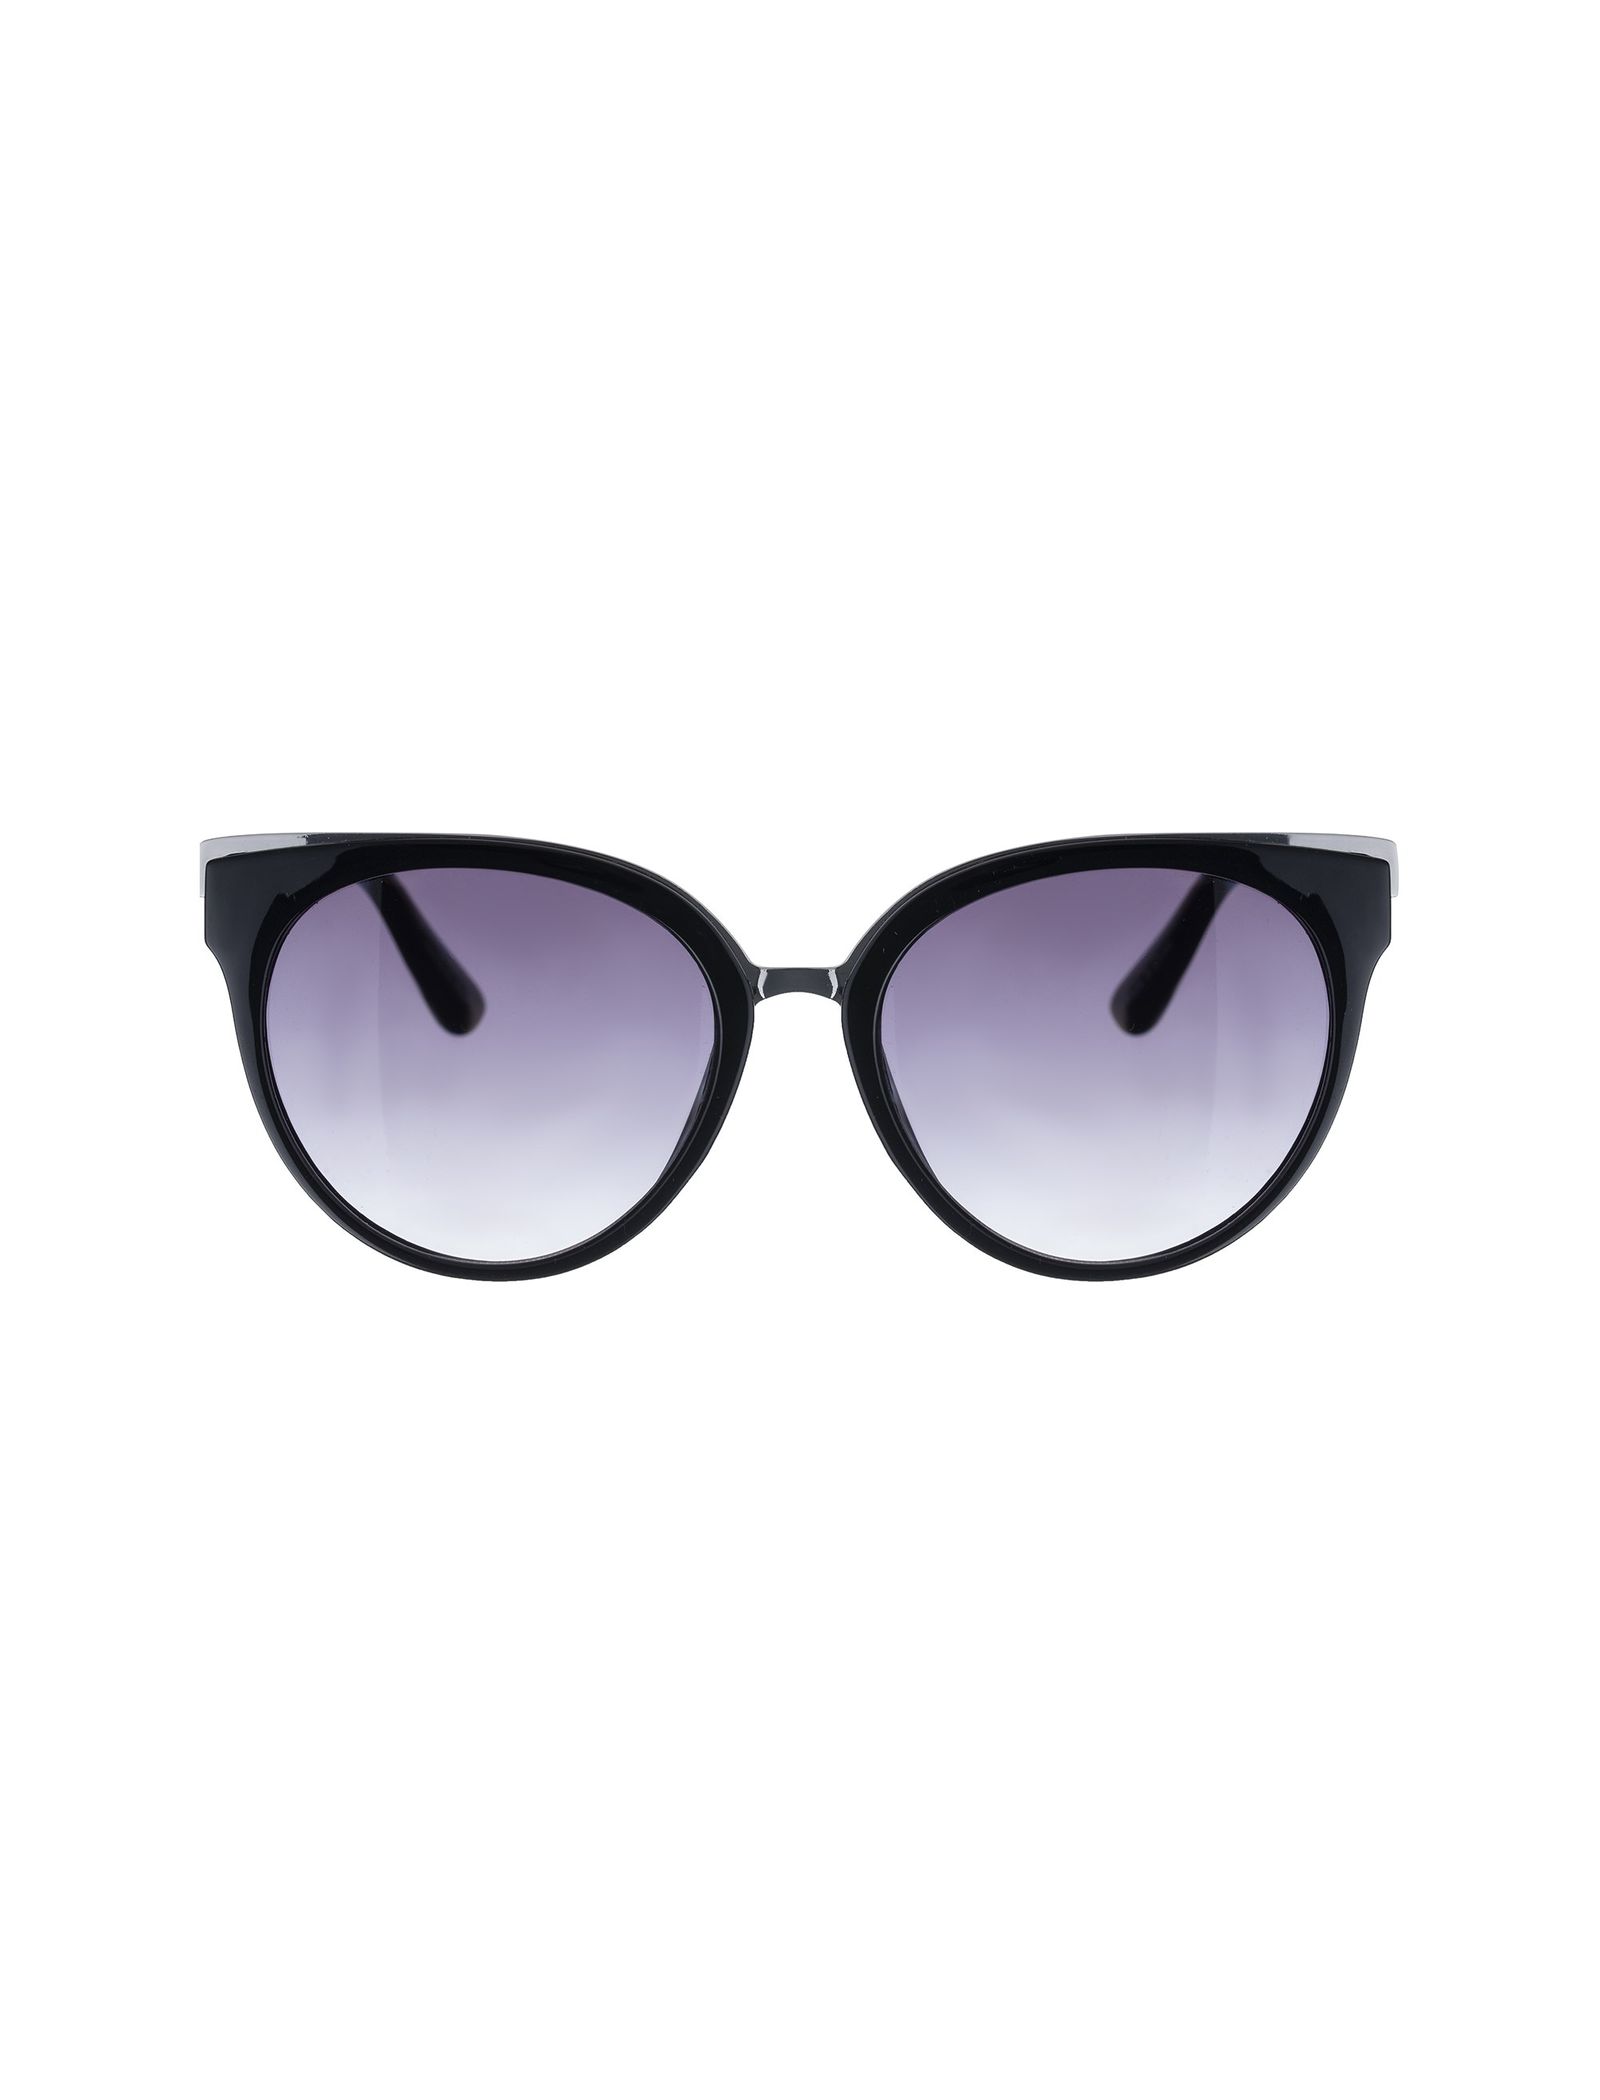 عینک آفتابی گربه ای زنانه - ورو مدا - مشکي - 1